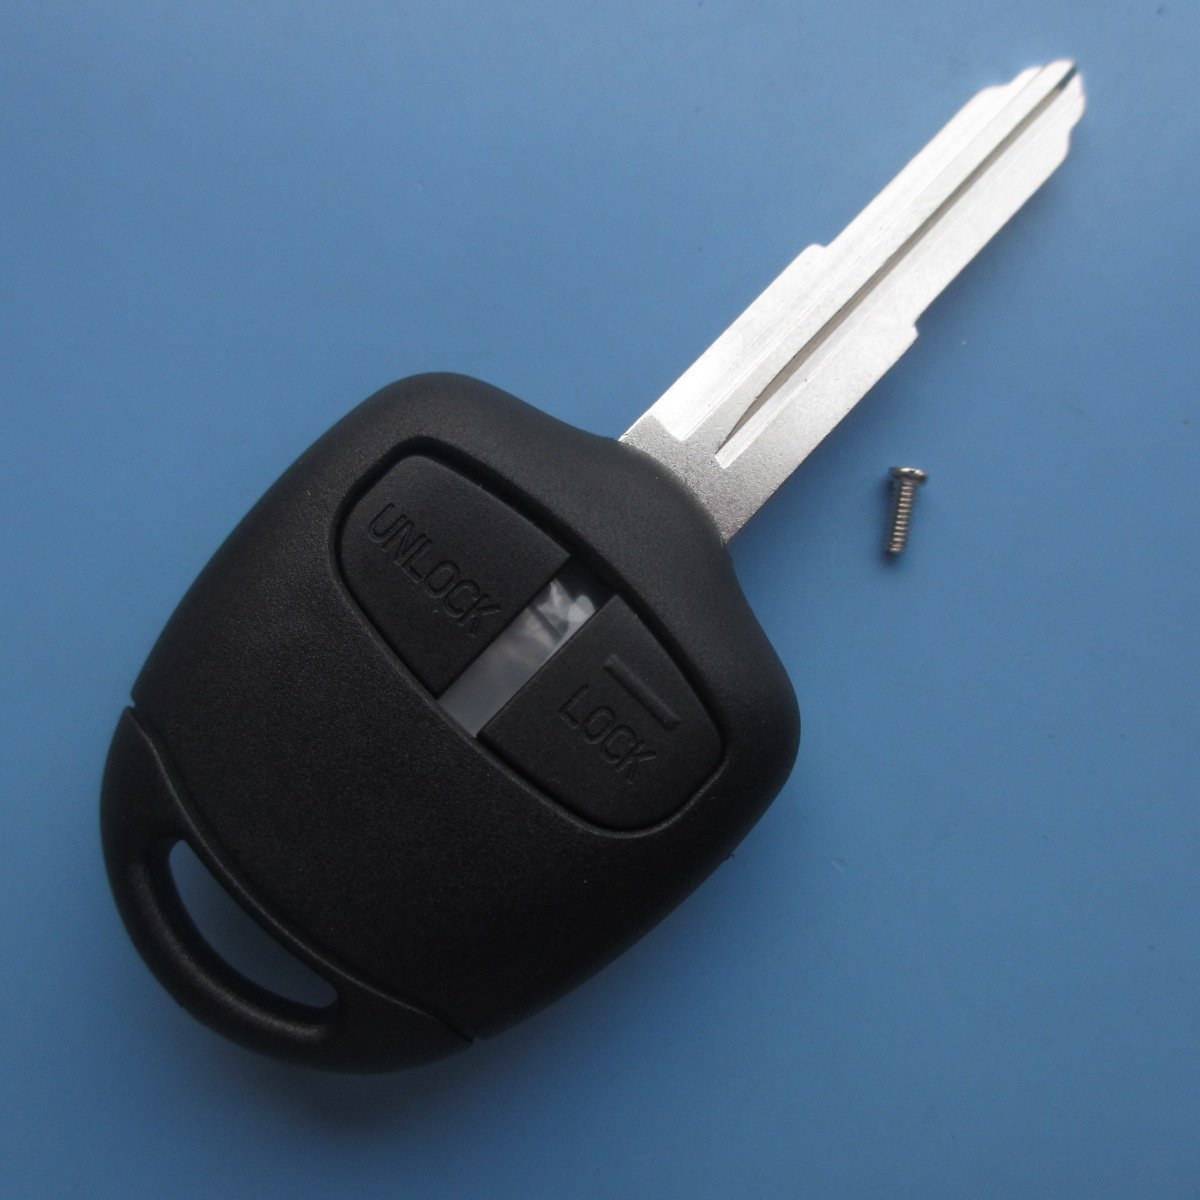 Ersatz Schlüssel Gehäuse Button Auto Schlüssel Klappschlüssel mit Rohling Fernbedienung Radio Frequenz Schlüssel Gehäuse ohne Inion Elektronik von INION